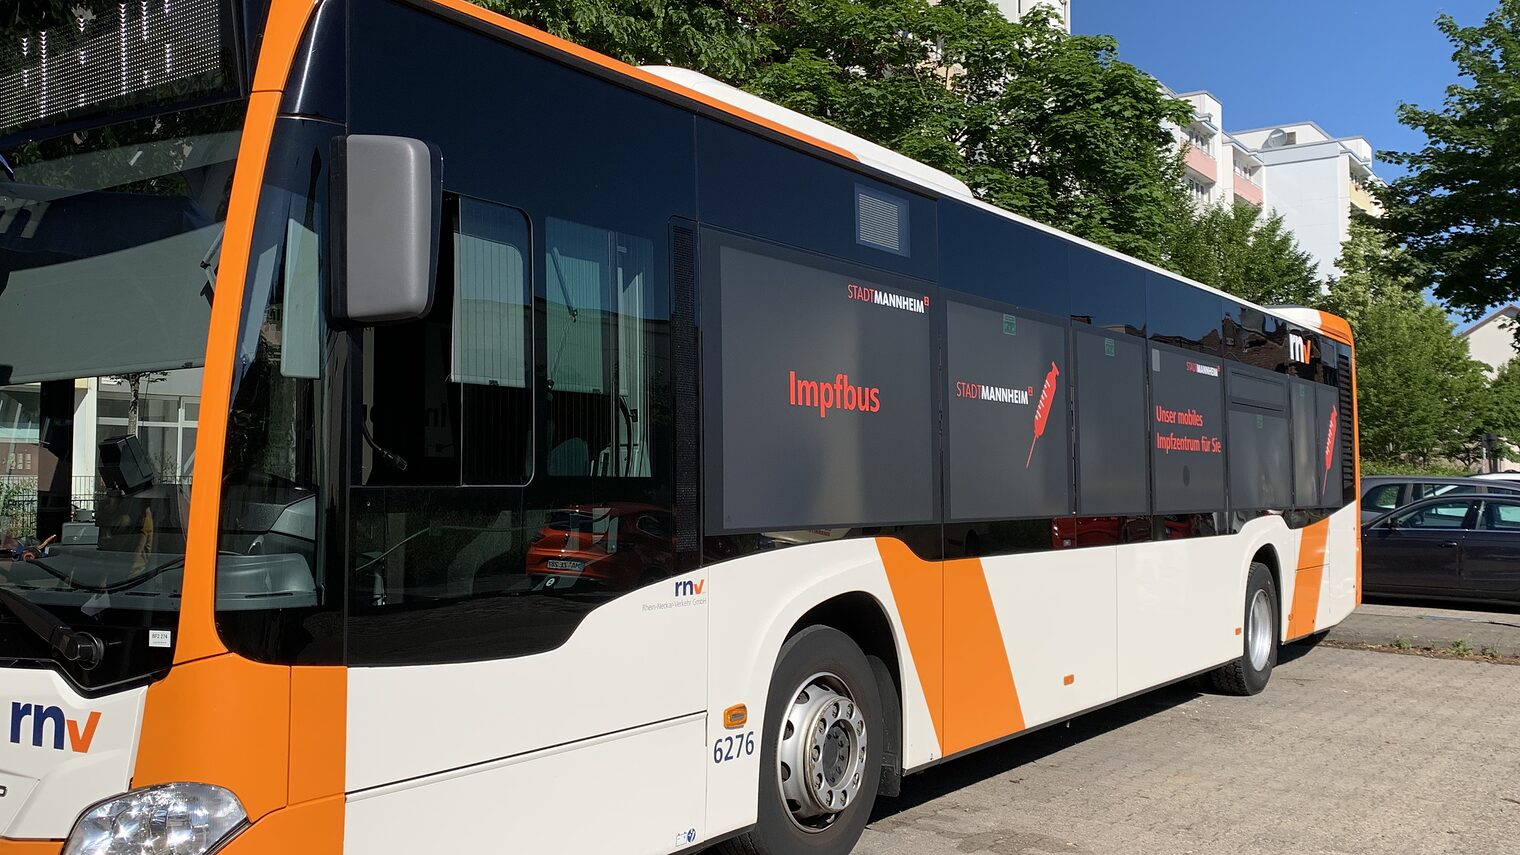 Bus in den Farben orange und weiß, Logo rnv und Aufschrift Impfbus auf den Fenstern 